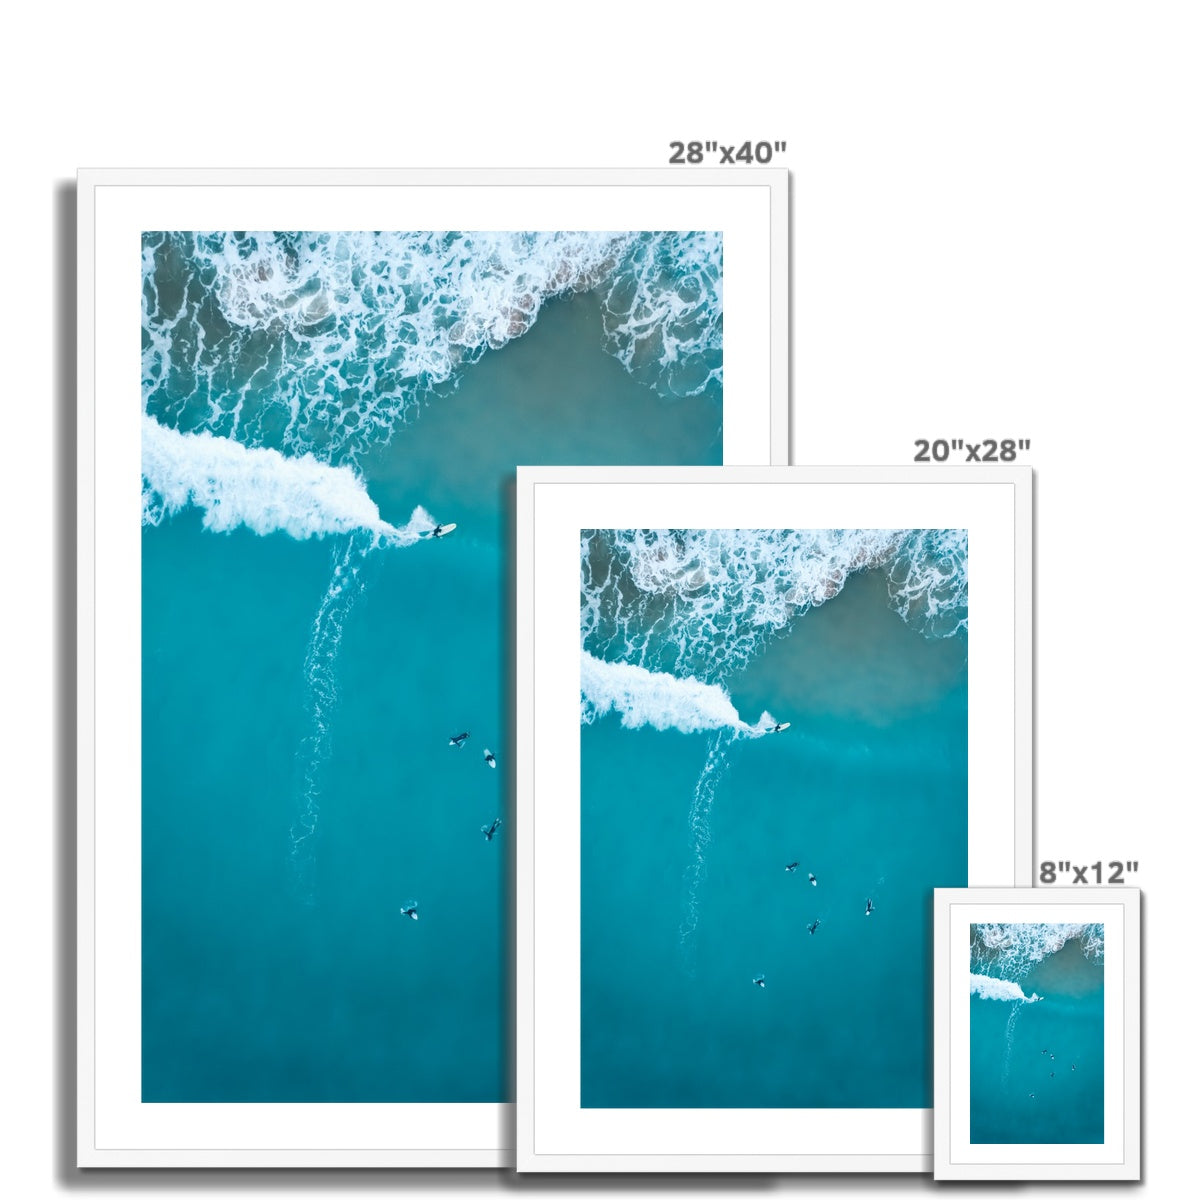 vertical surfer wooden frame sizes